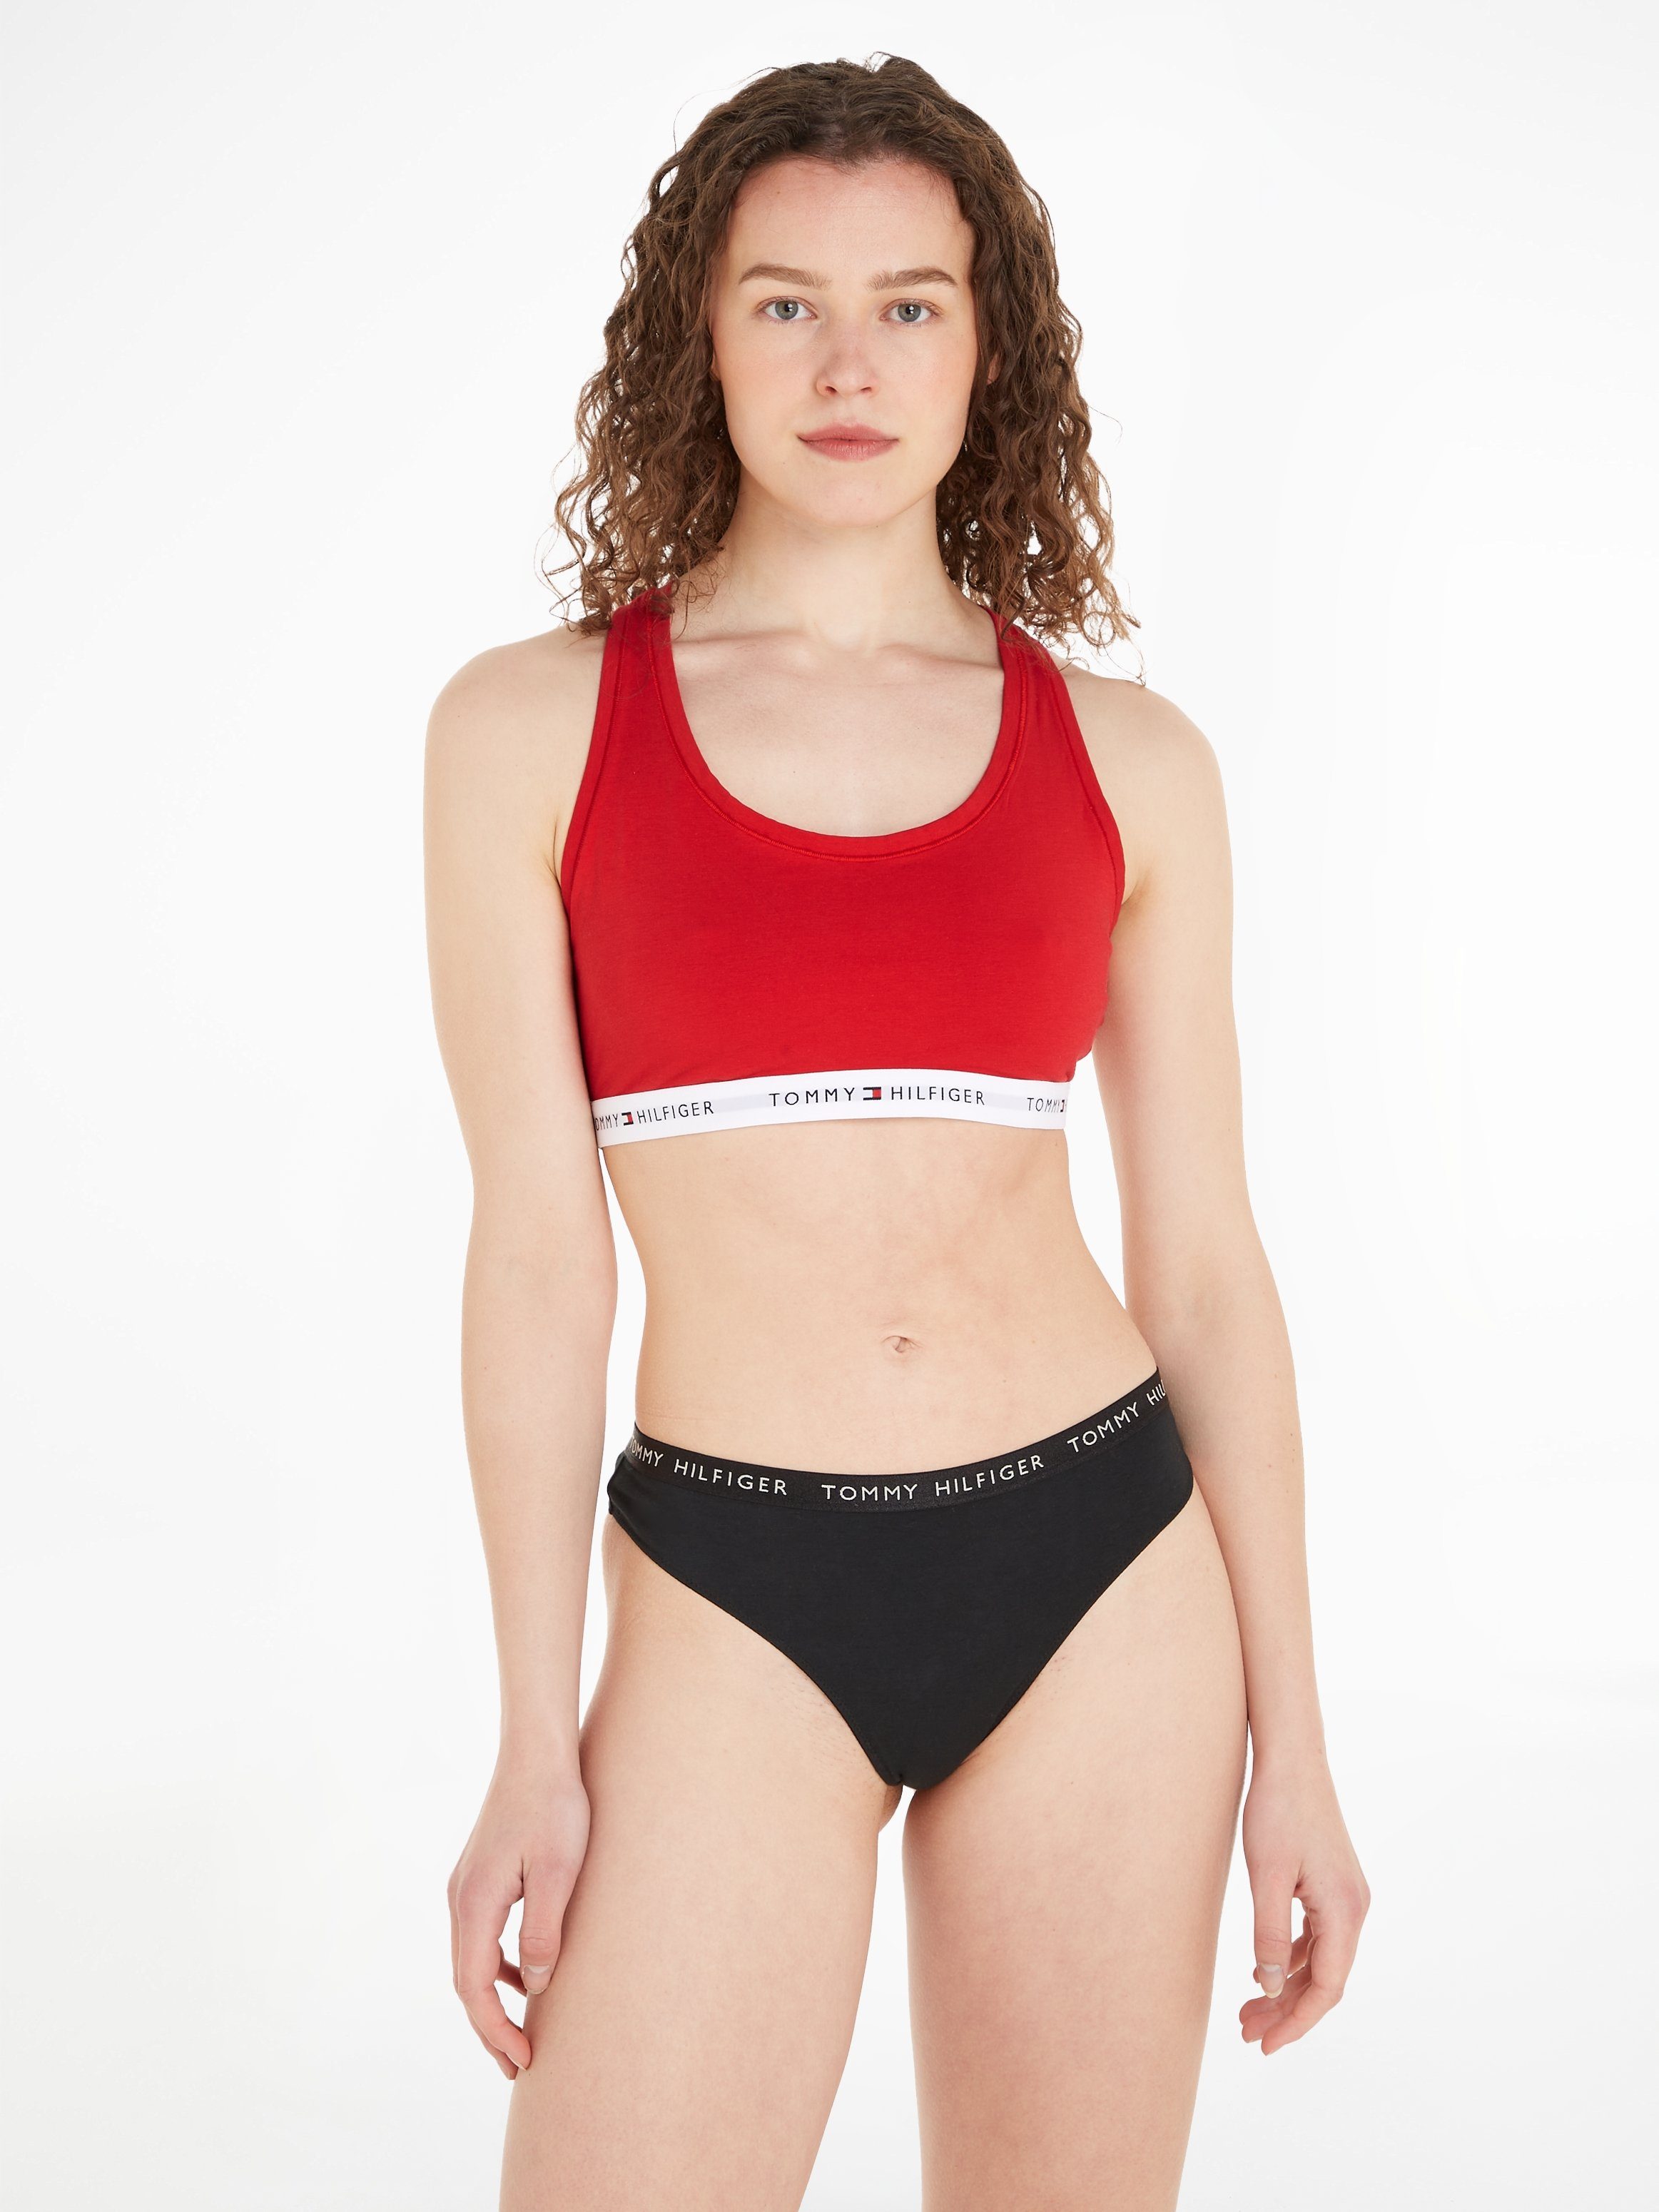 Unterbrustband Sport-Bustier Underwear Red Hilfiger dem mit Tommy auf Primary TH-Schriftzügen